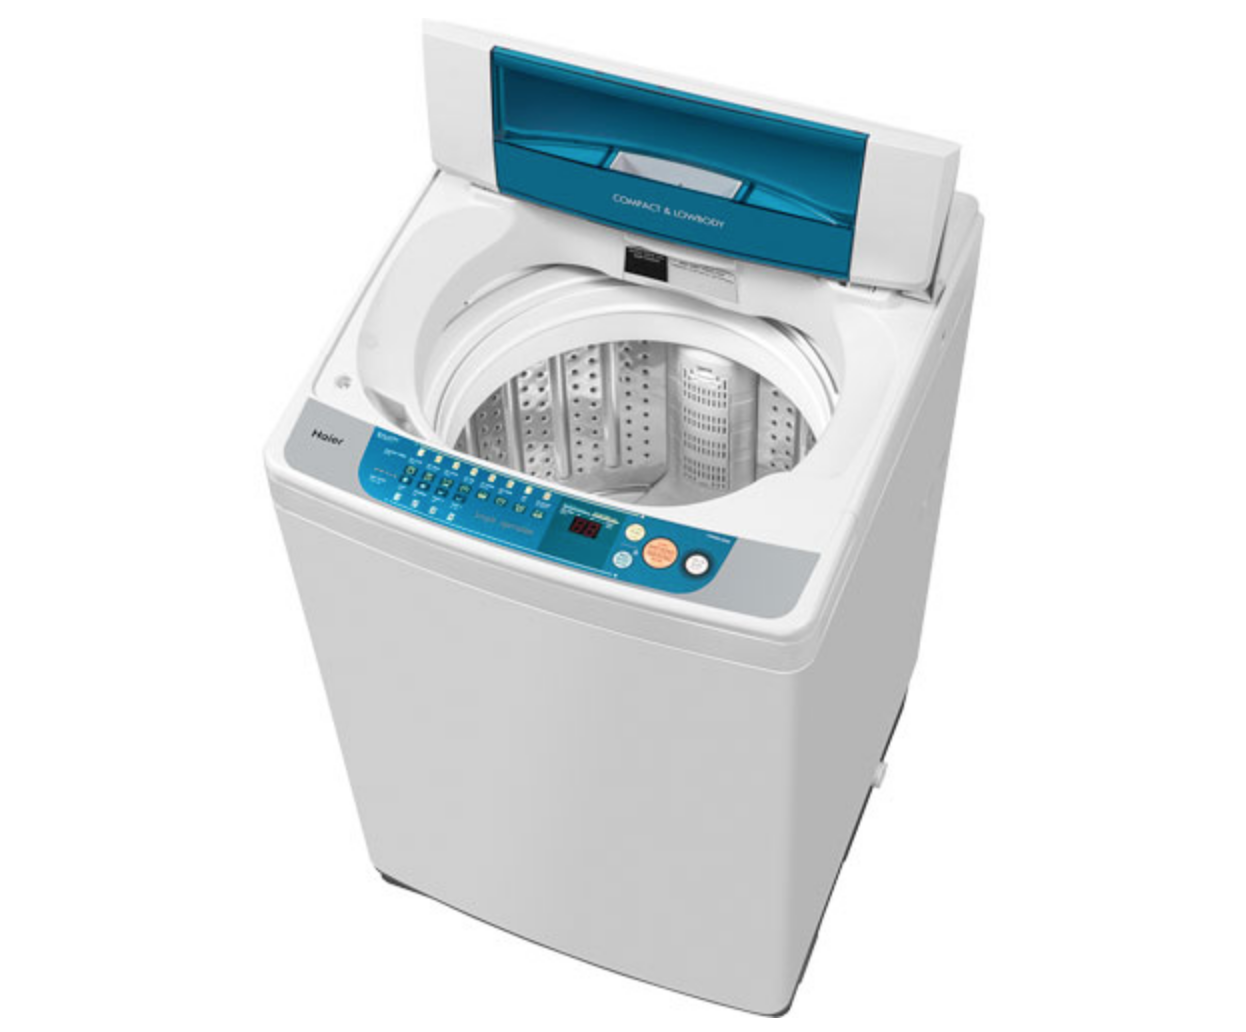 Máy giặt Sanyo báo lỗi U3 -Nguyên nhân – Xử lý triệt để tại nhà